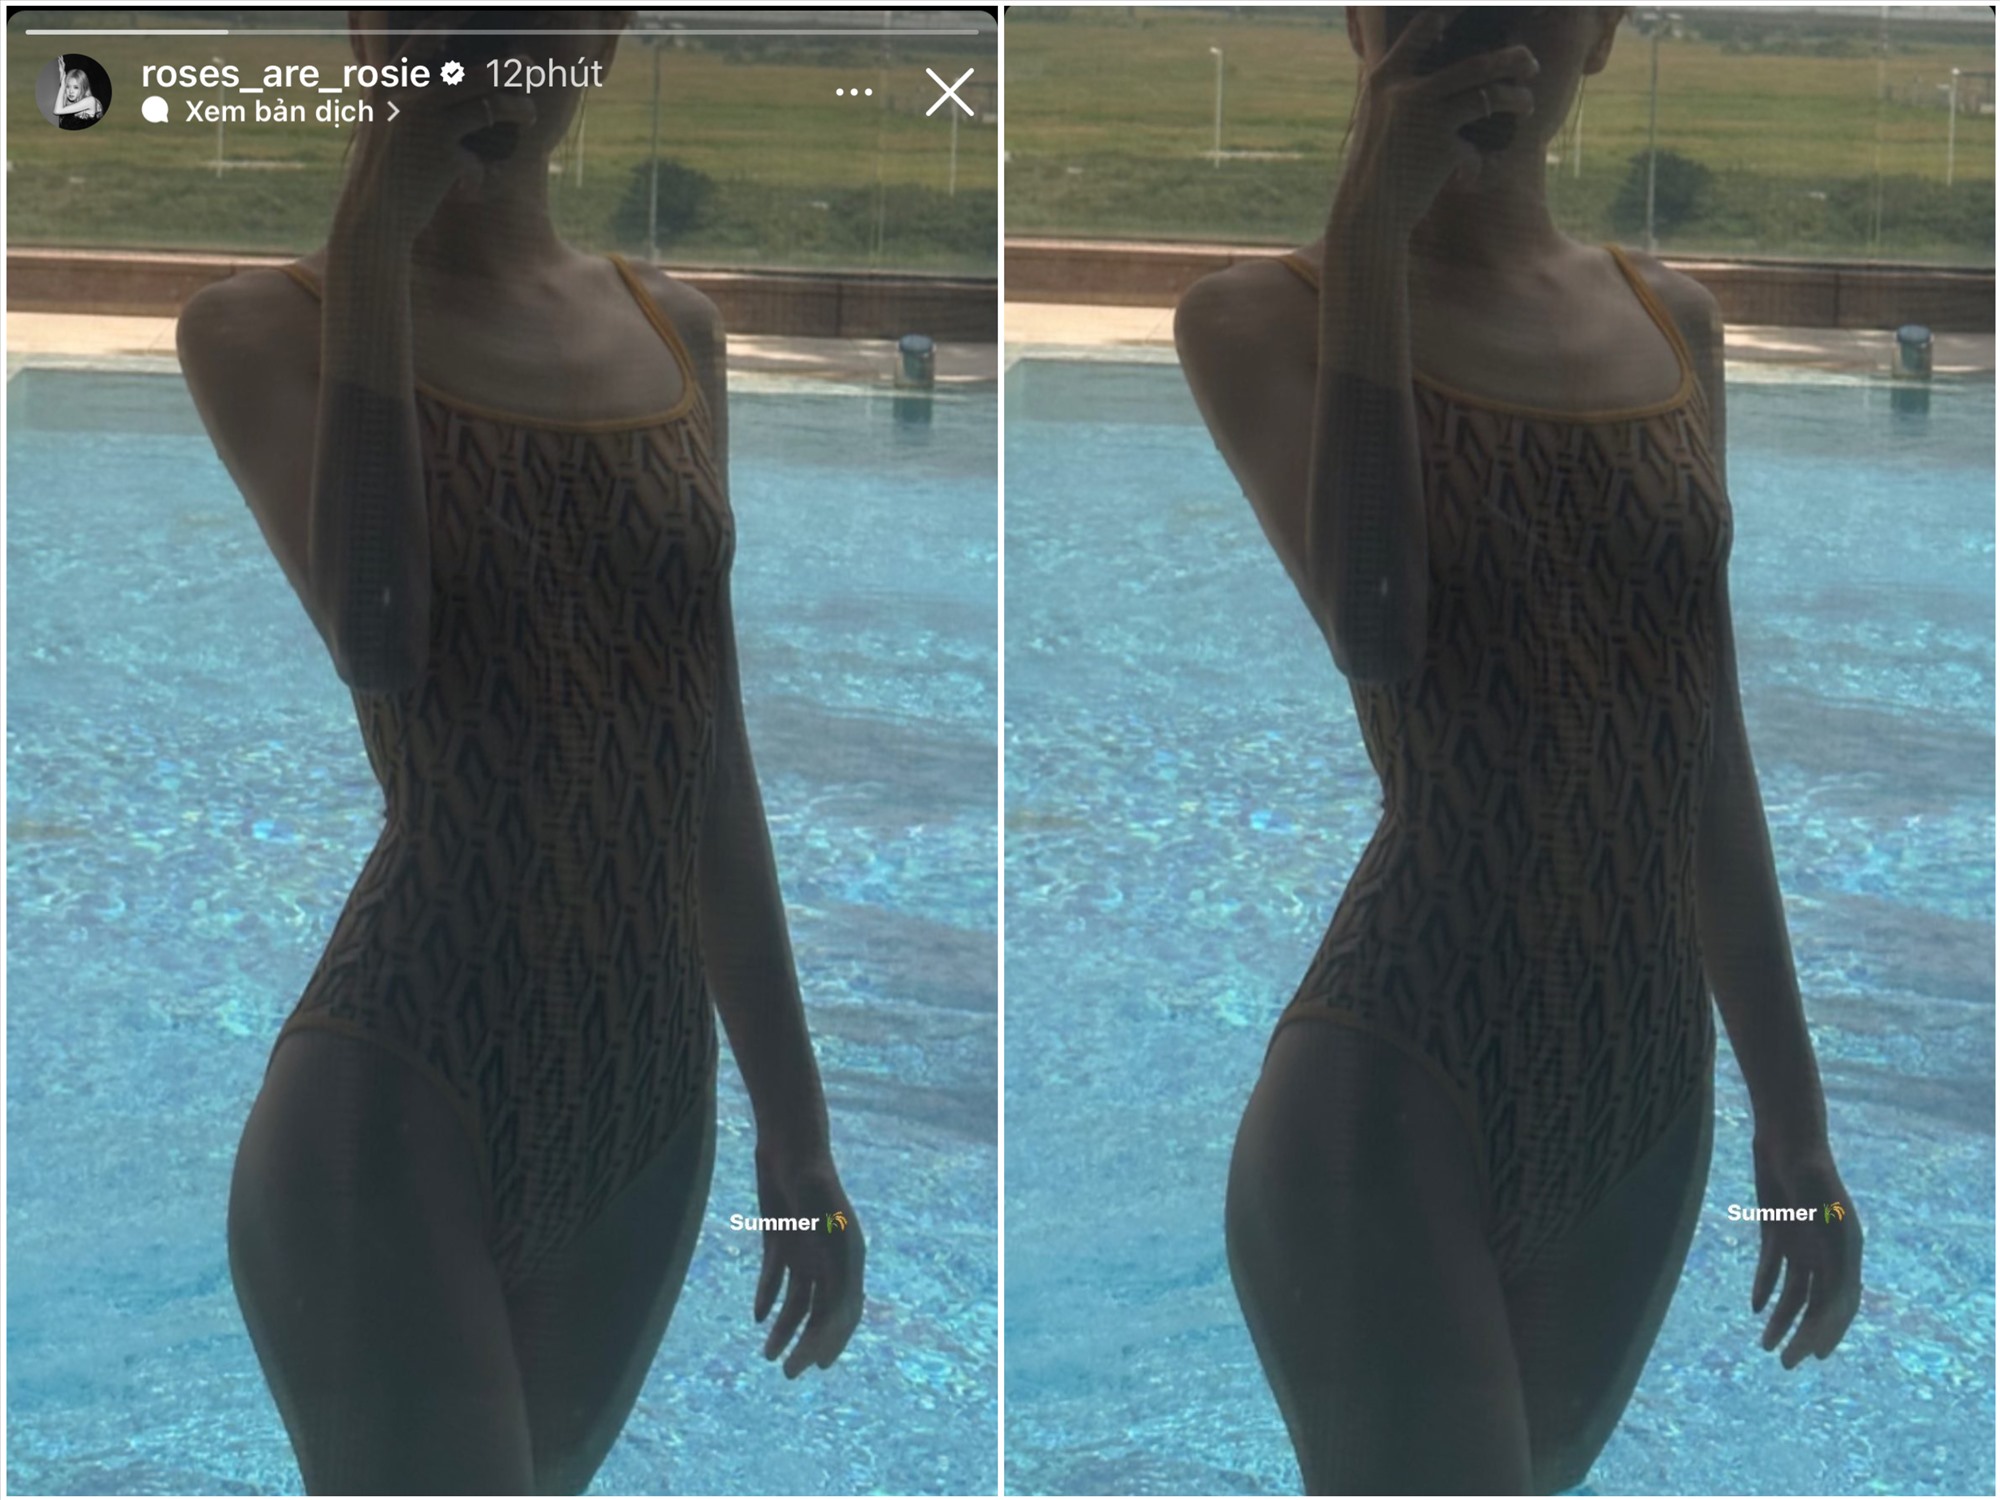 Hình ảnh diện bikini được Rosé chia sẻ trên story Instagram. Ảnh: Instagram